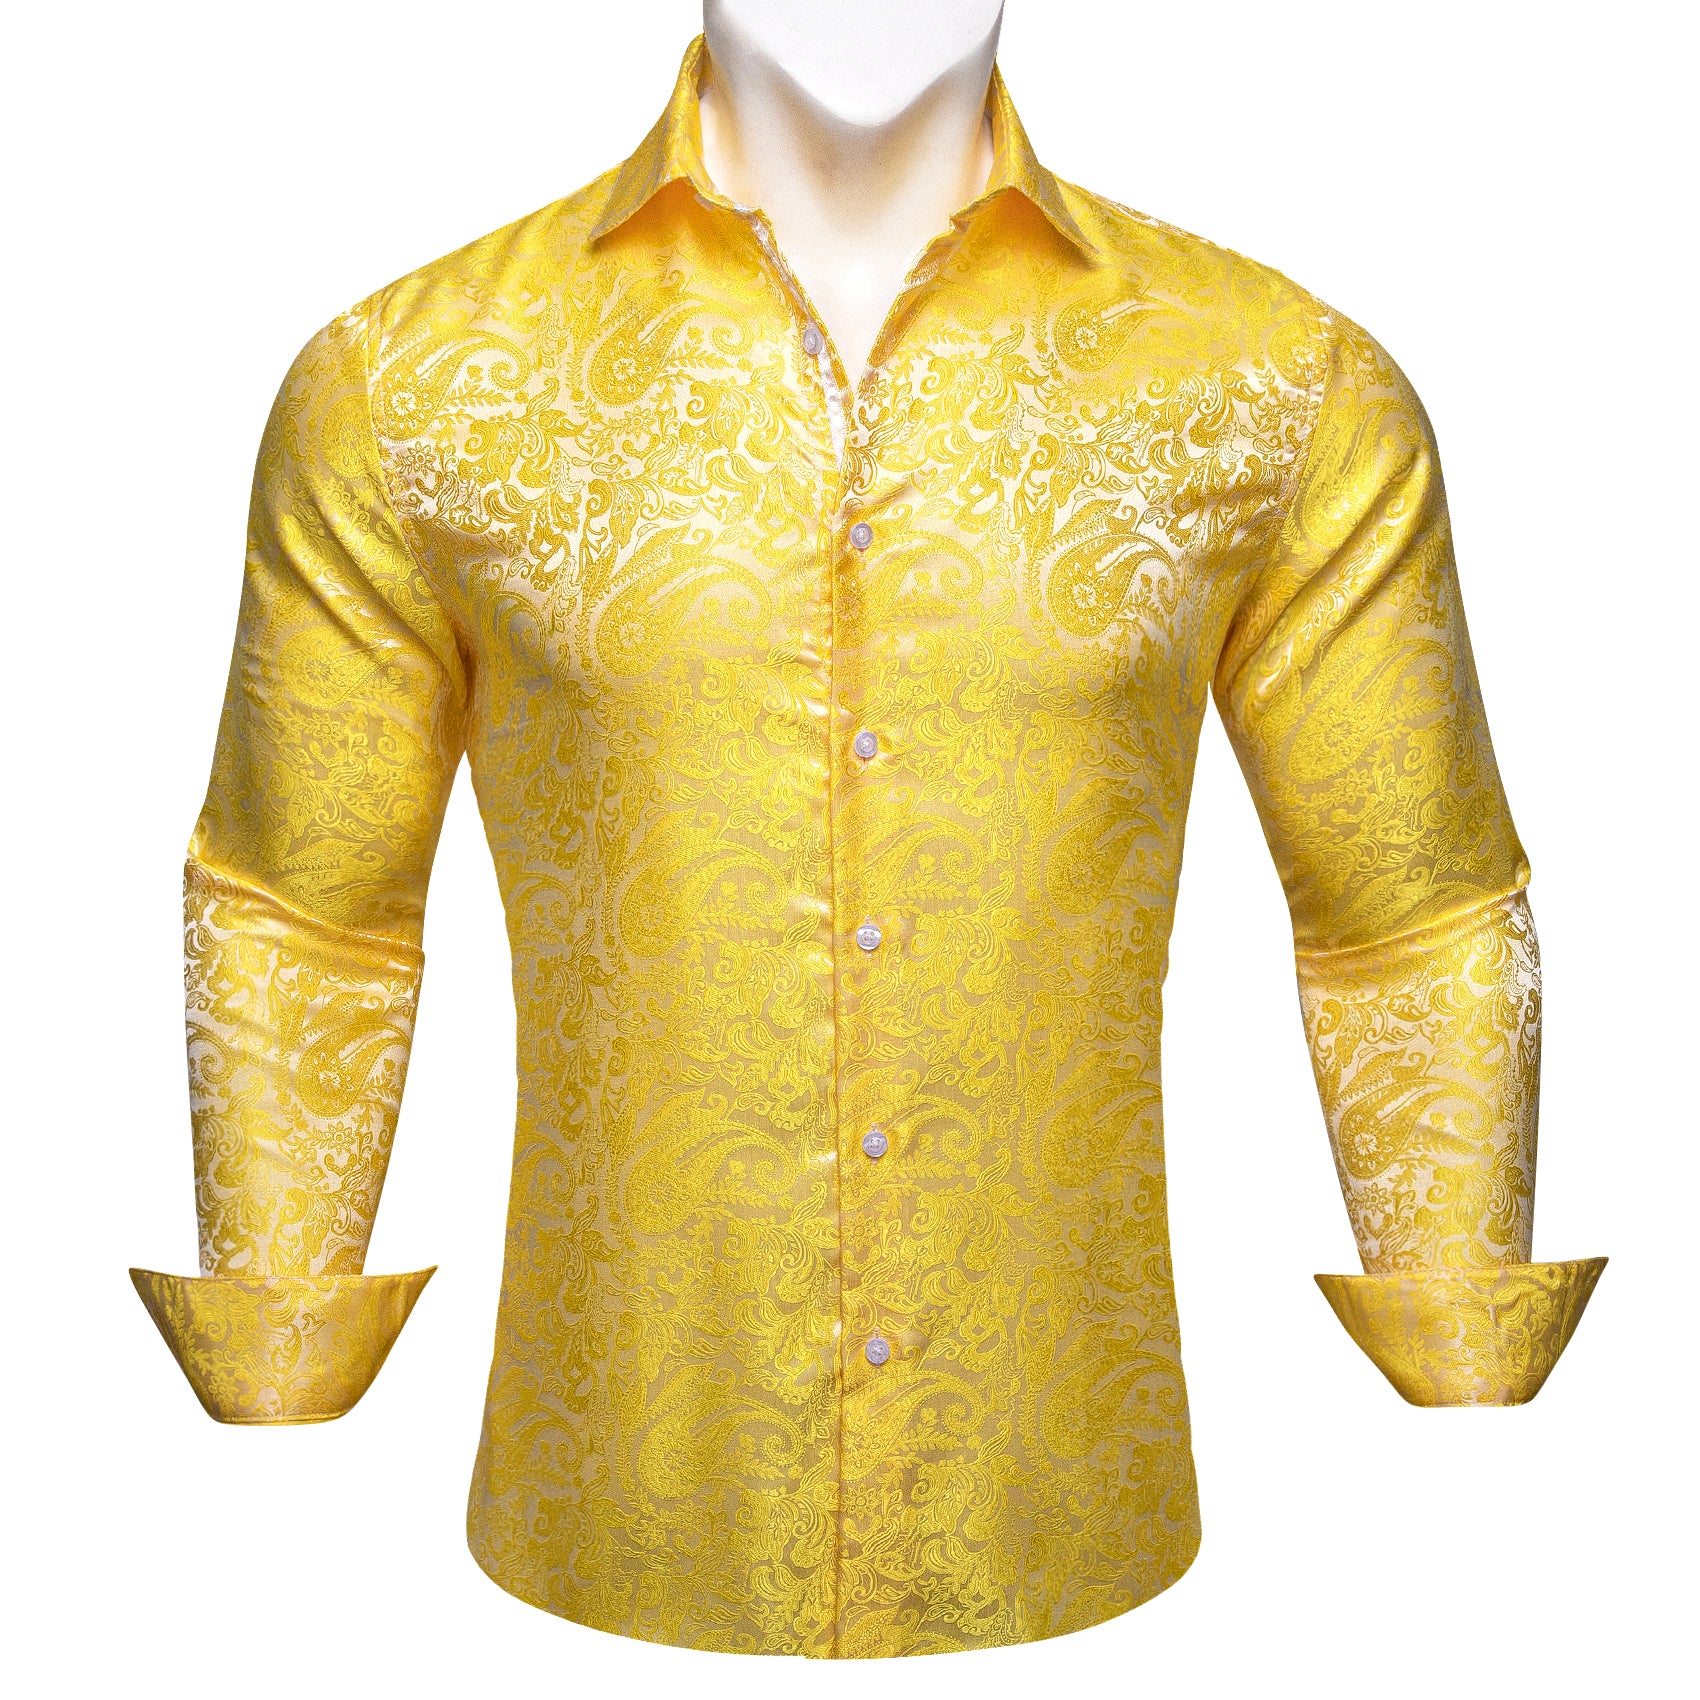 Barry.wang Button Down Shirt Yellow Paisley Silk Men's Shirt